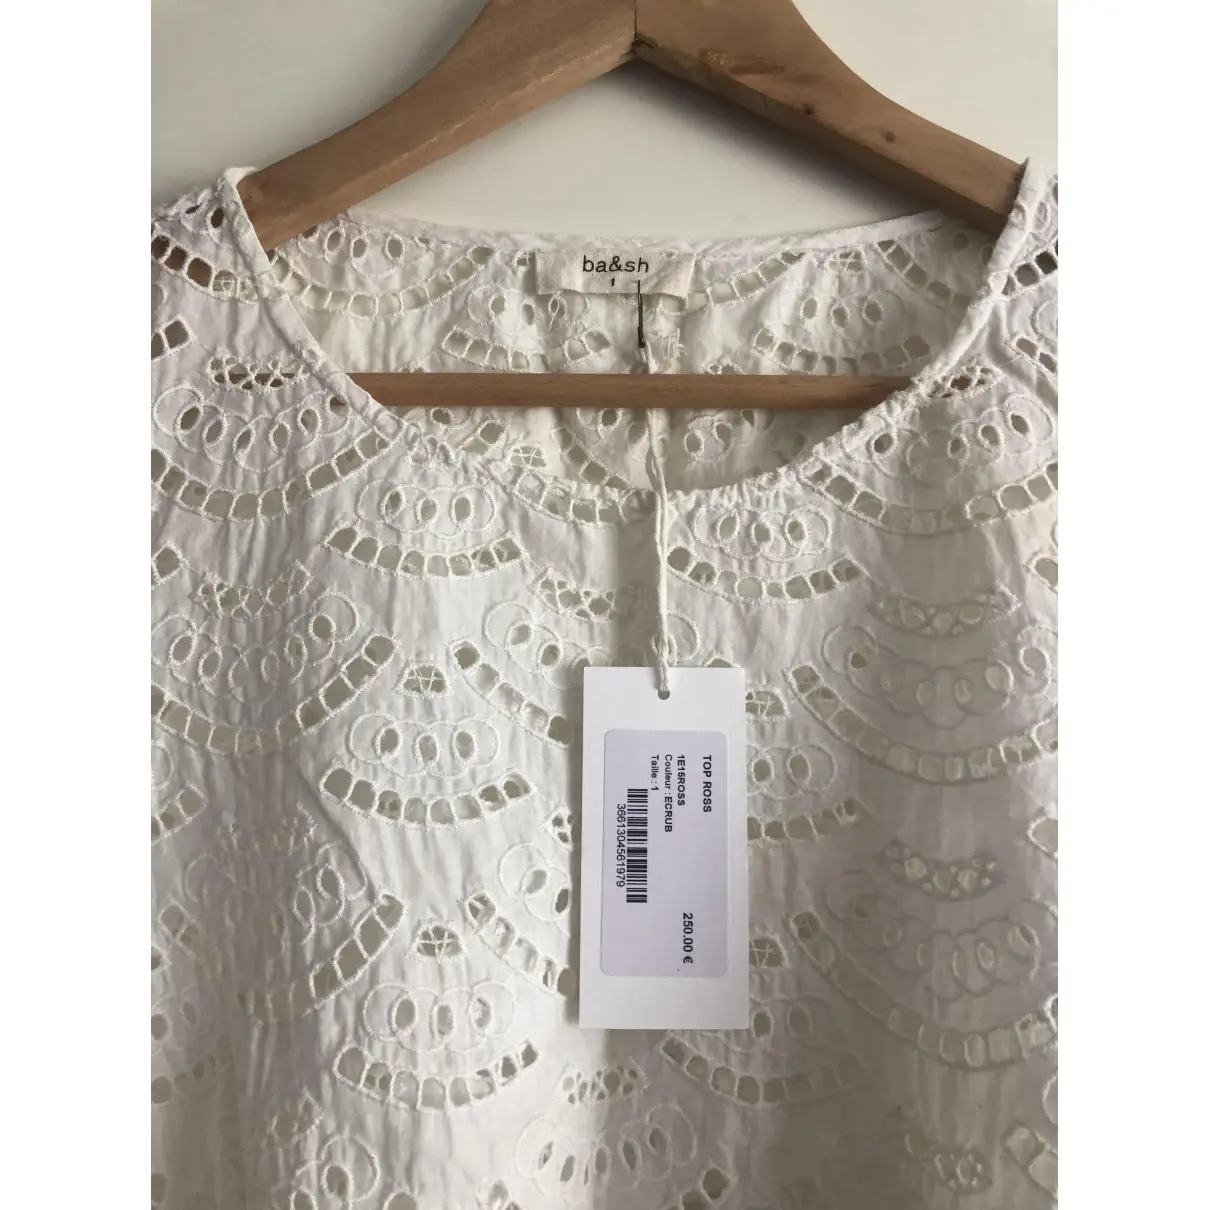 Buy Ba&sh Lace blouse online